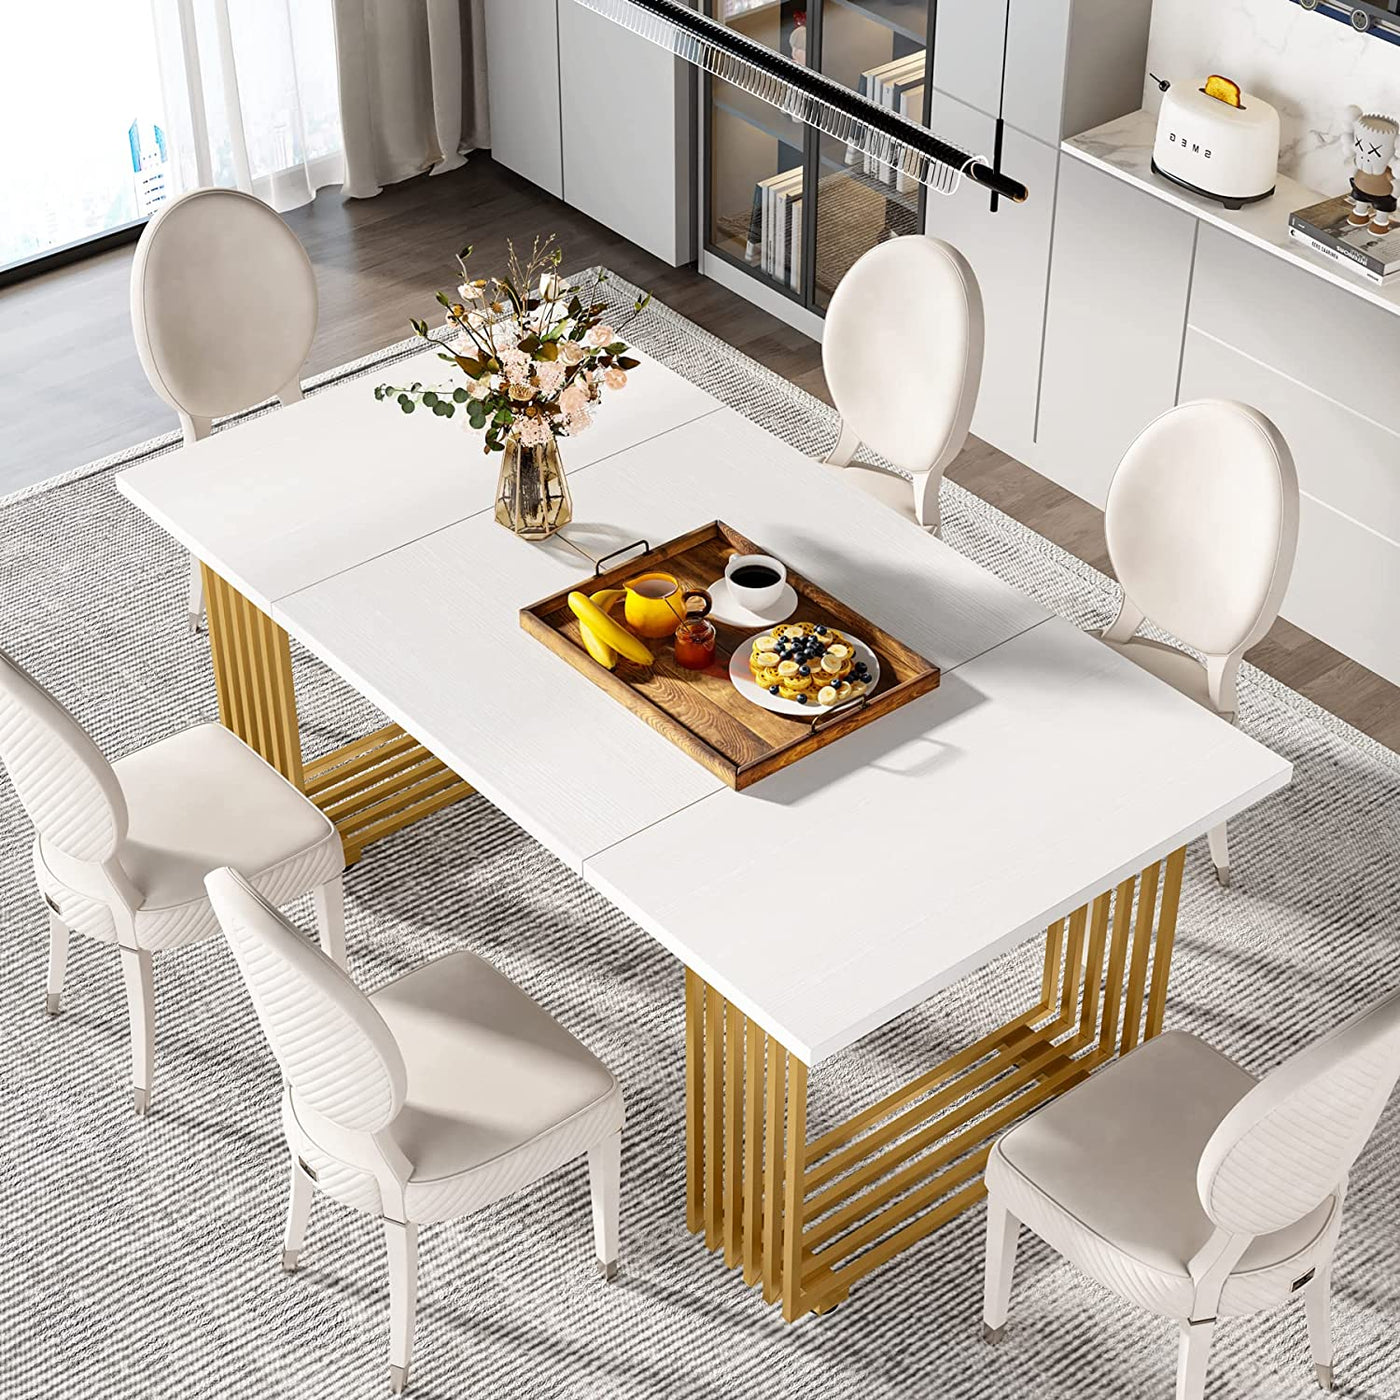 طاولة طعام حديثة من ناتال | طاولة مطبخ مستطيلة الشكل من الرخام الصناعي مقاس 70.8 بوصة، تتسع لـ 6-8 أشخاص